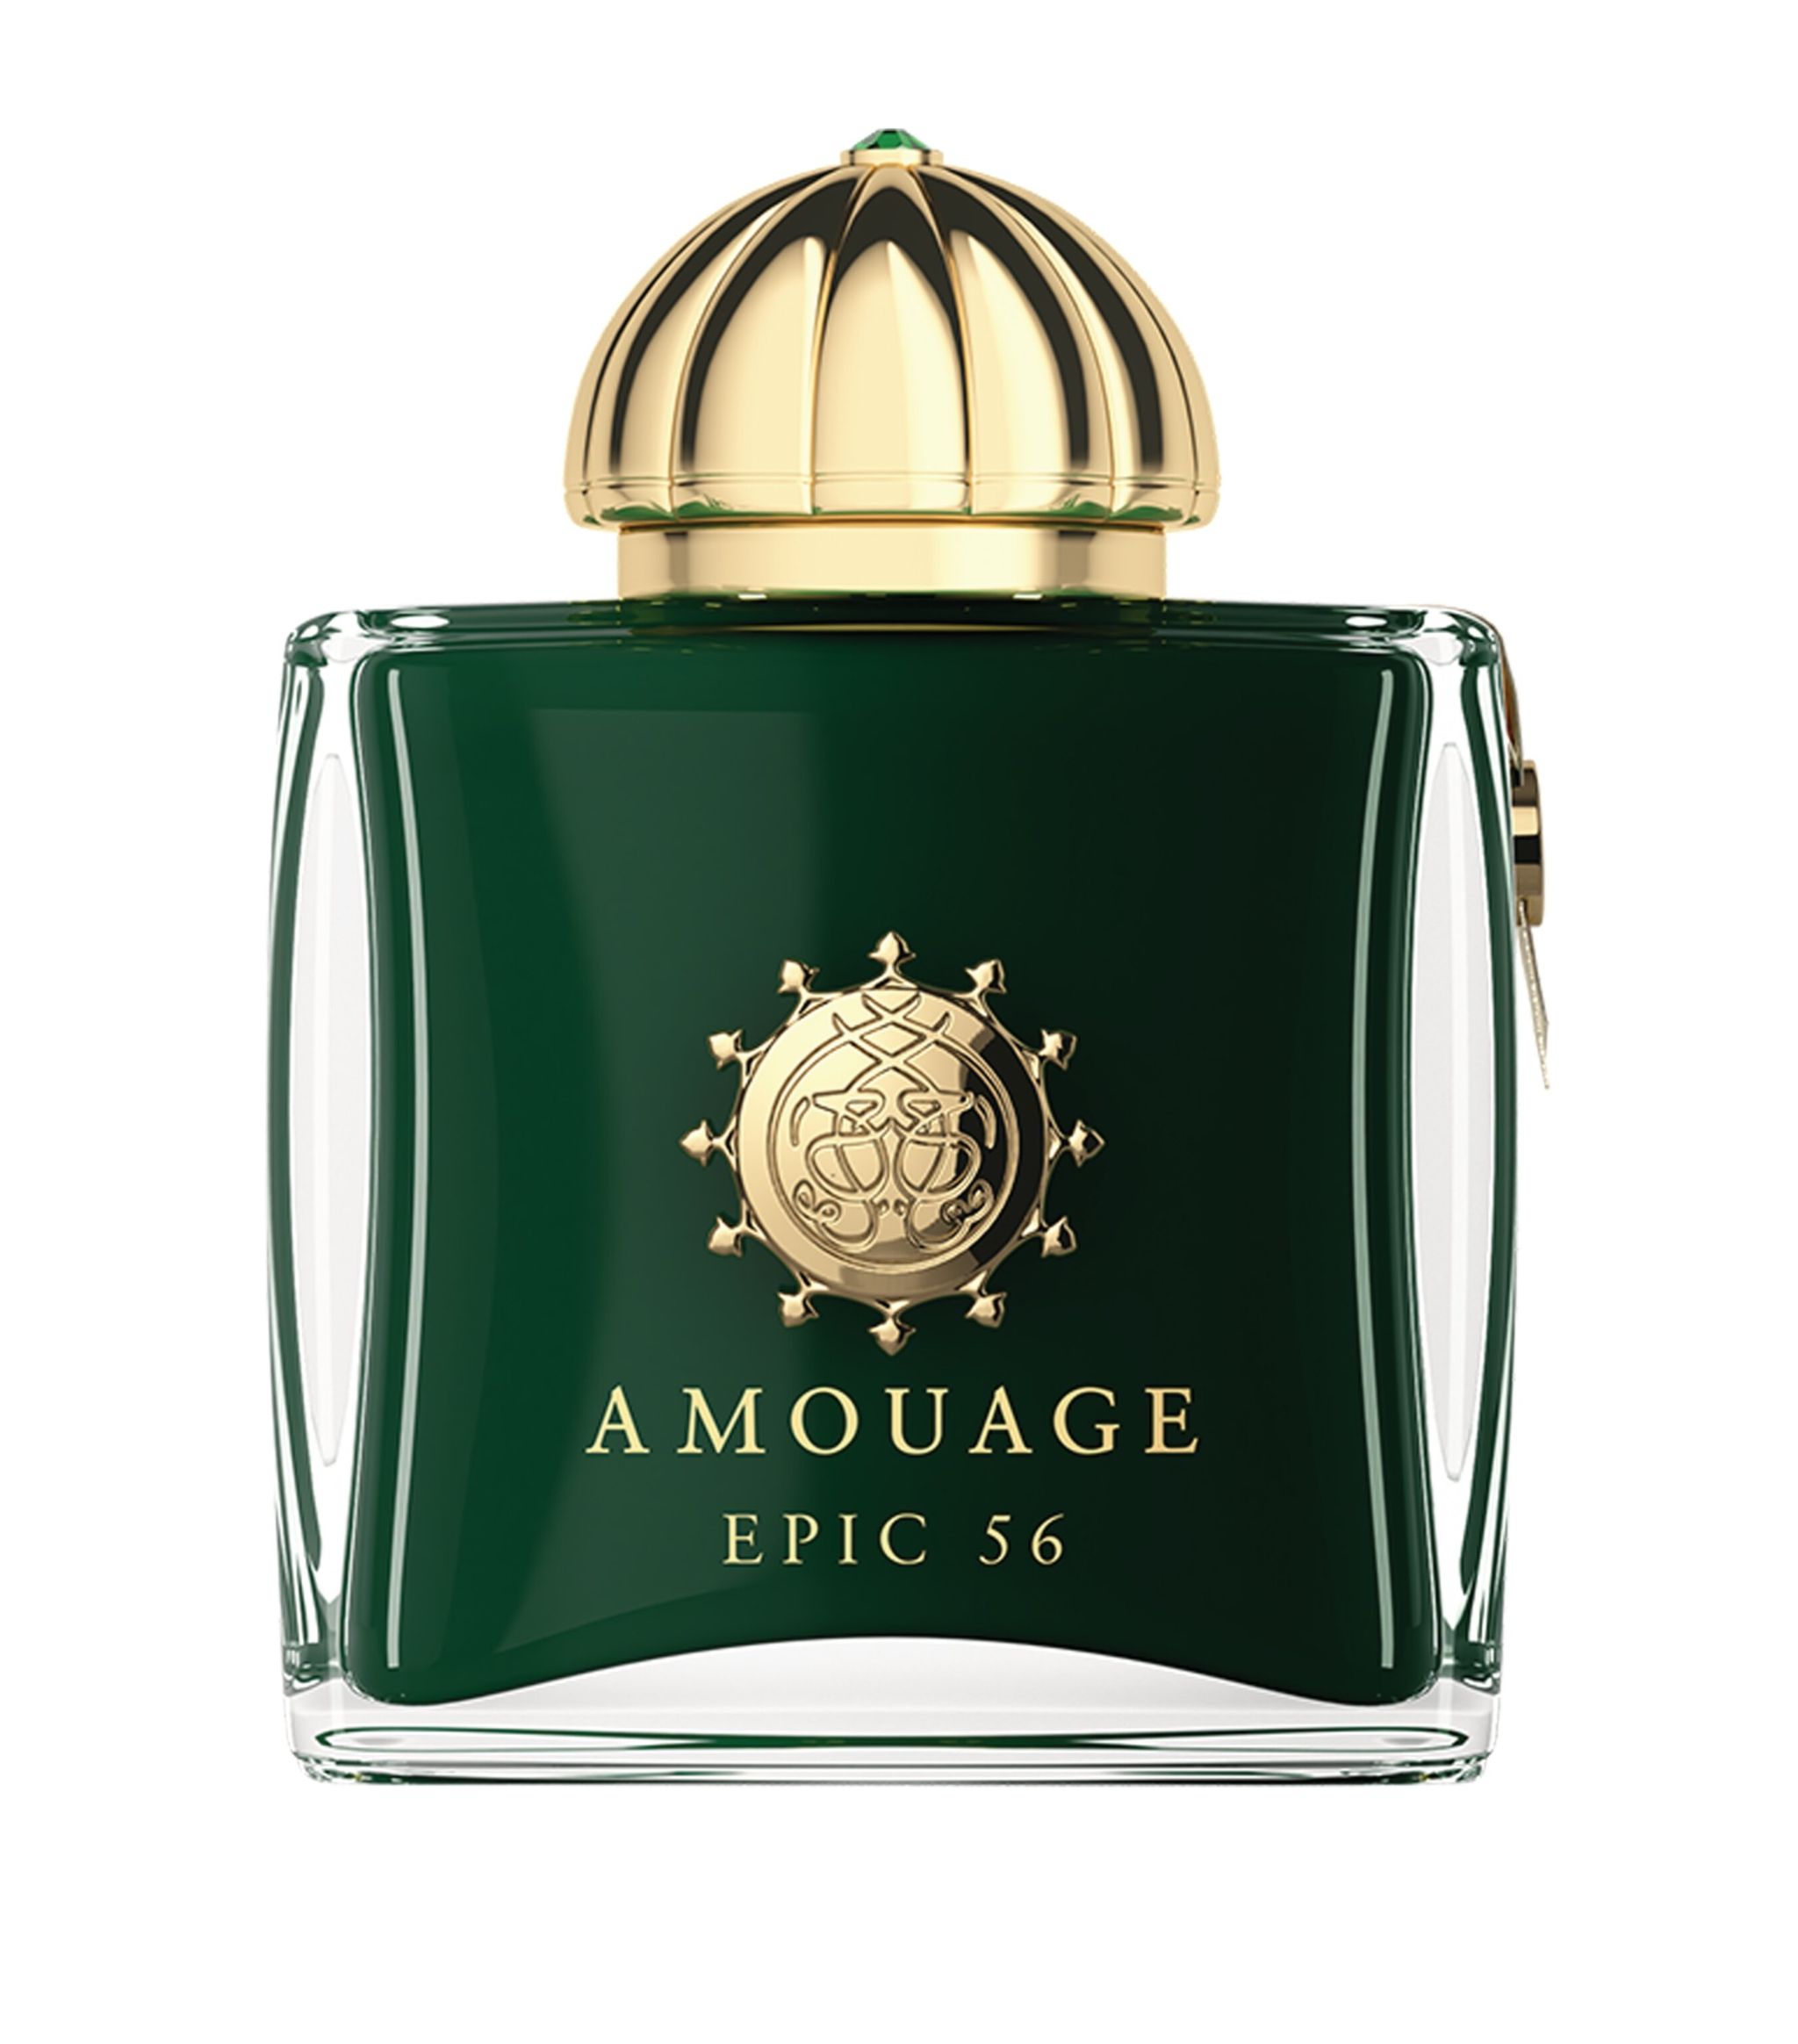 Amouage Epic 56 Woman extrait 15 ml NIŠINIAI kvepalų mėginukas (atomaizeris) Moterims Parfum